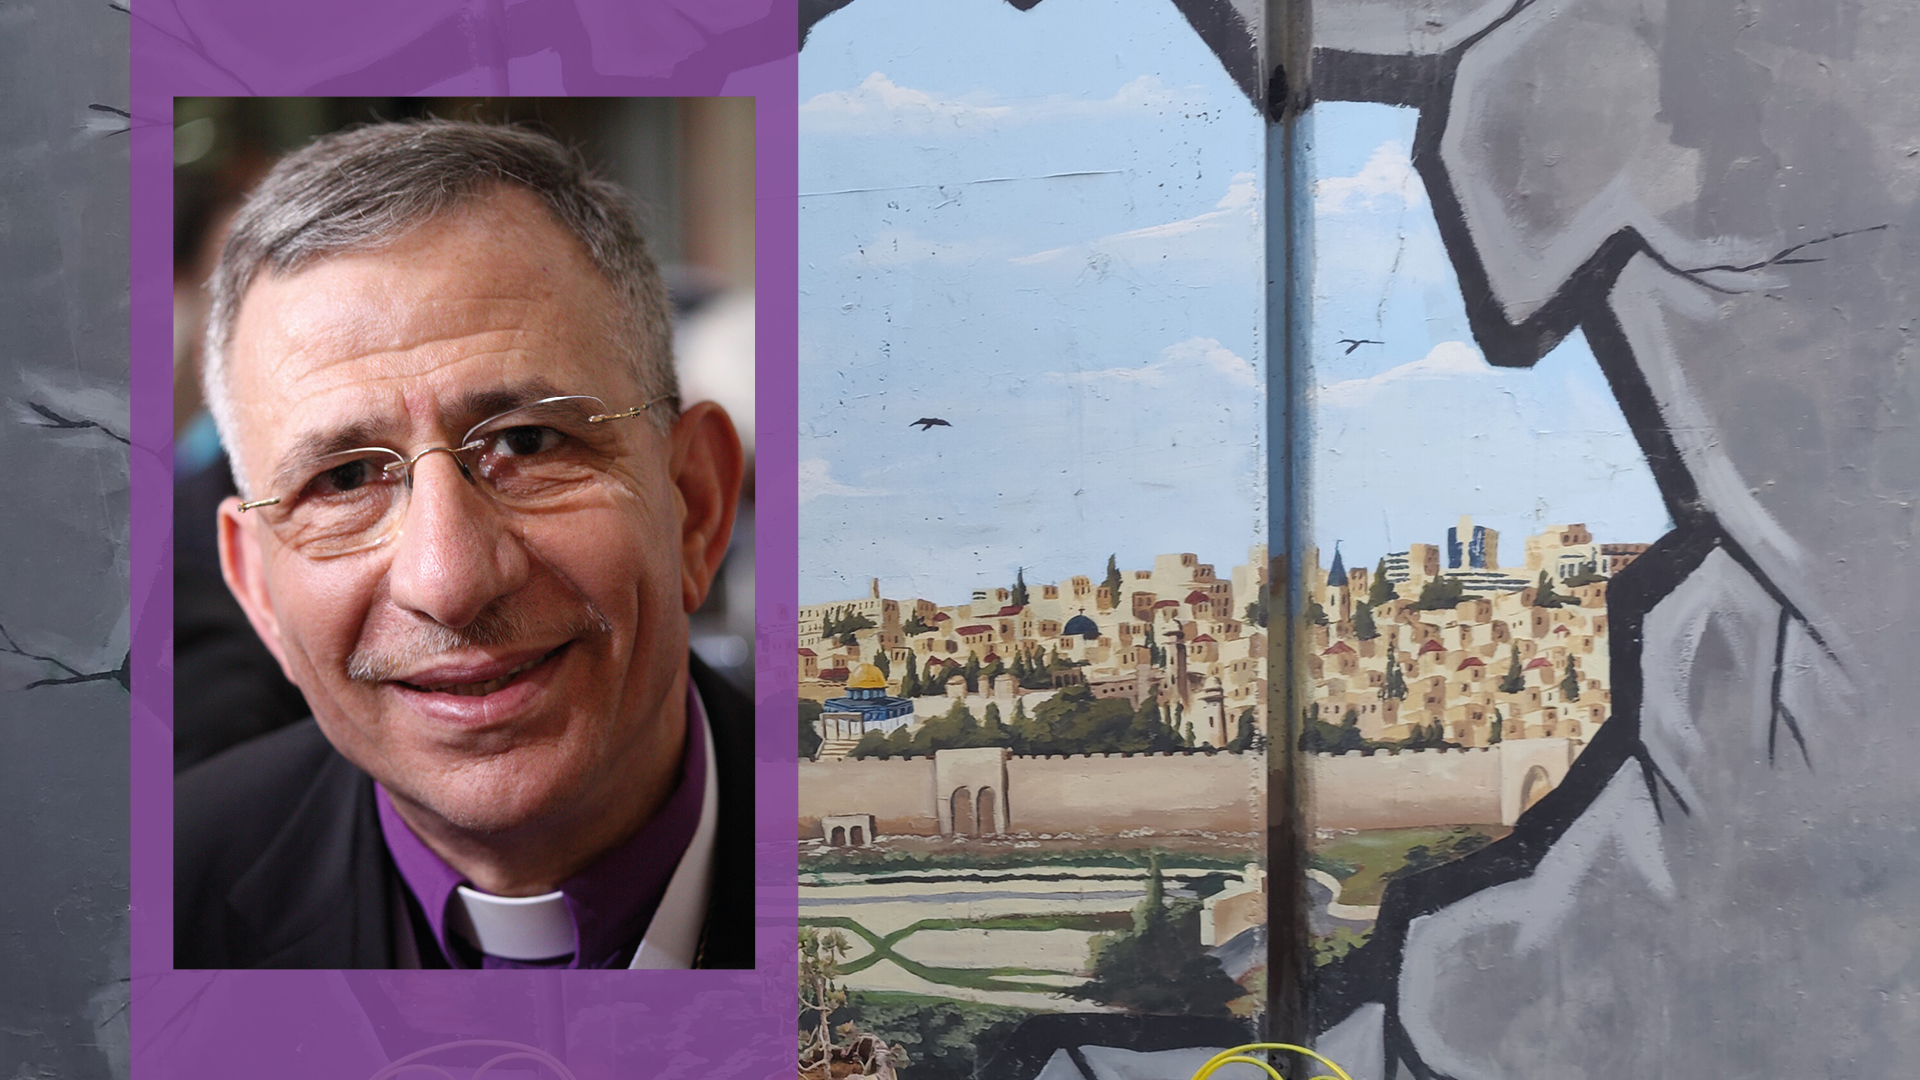 Kuvassa on emerituspiispa Munib Younanin kasvot ja kuva muraalista Palestiinassa.